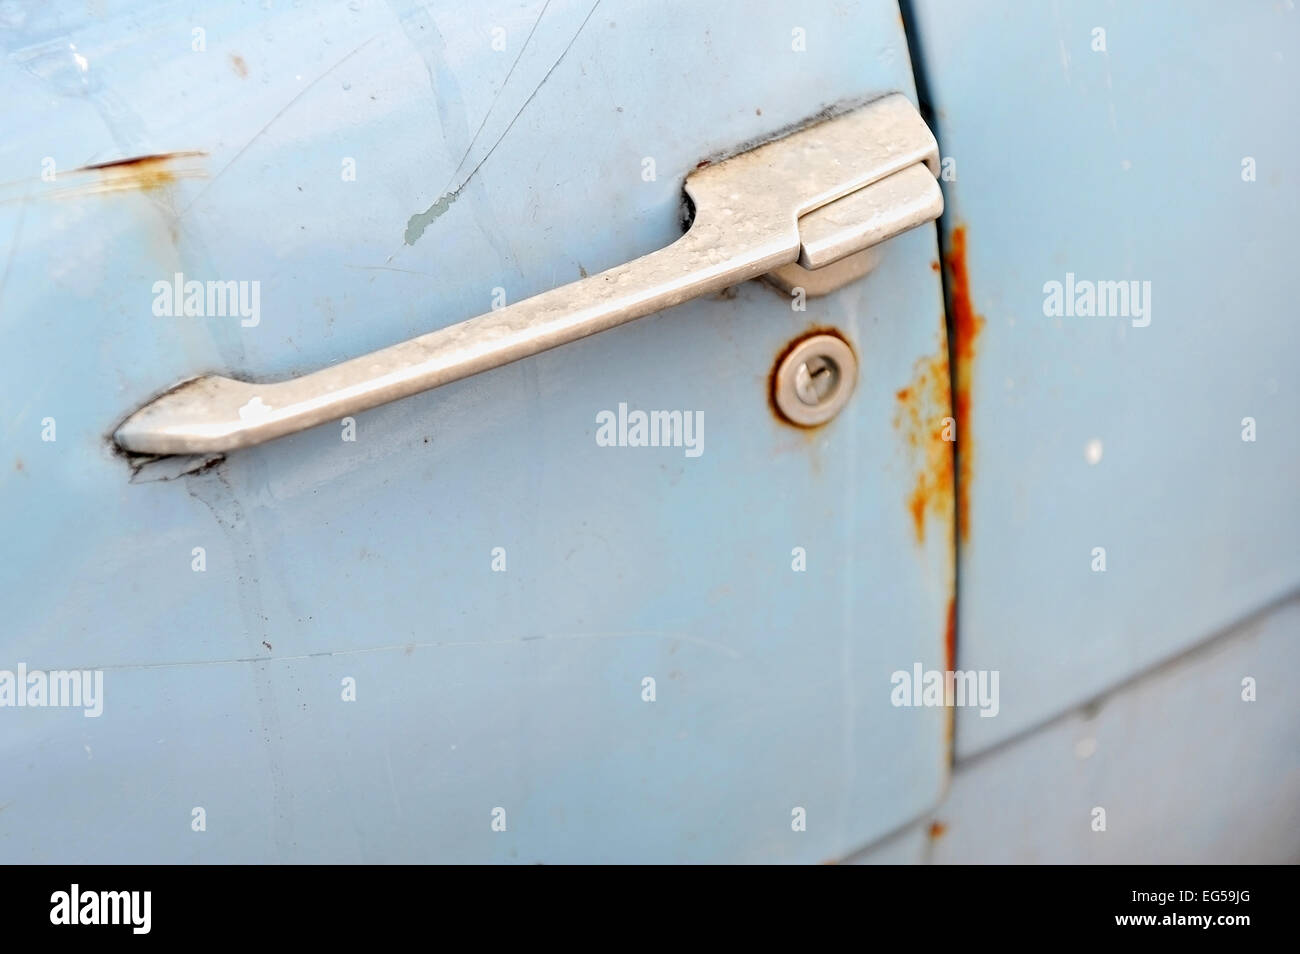 Detalle shot con una empuñadura de puerta oxidada de un coche viejo Foto de stock